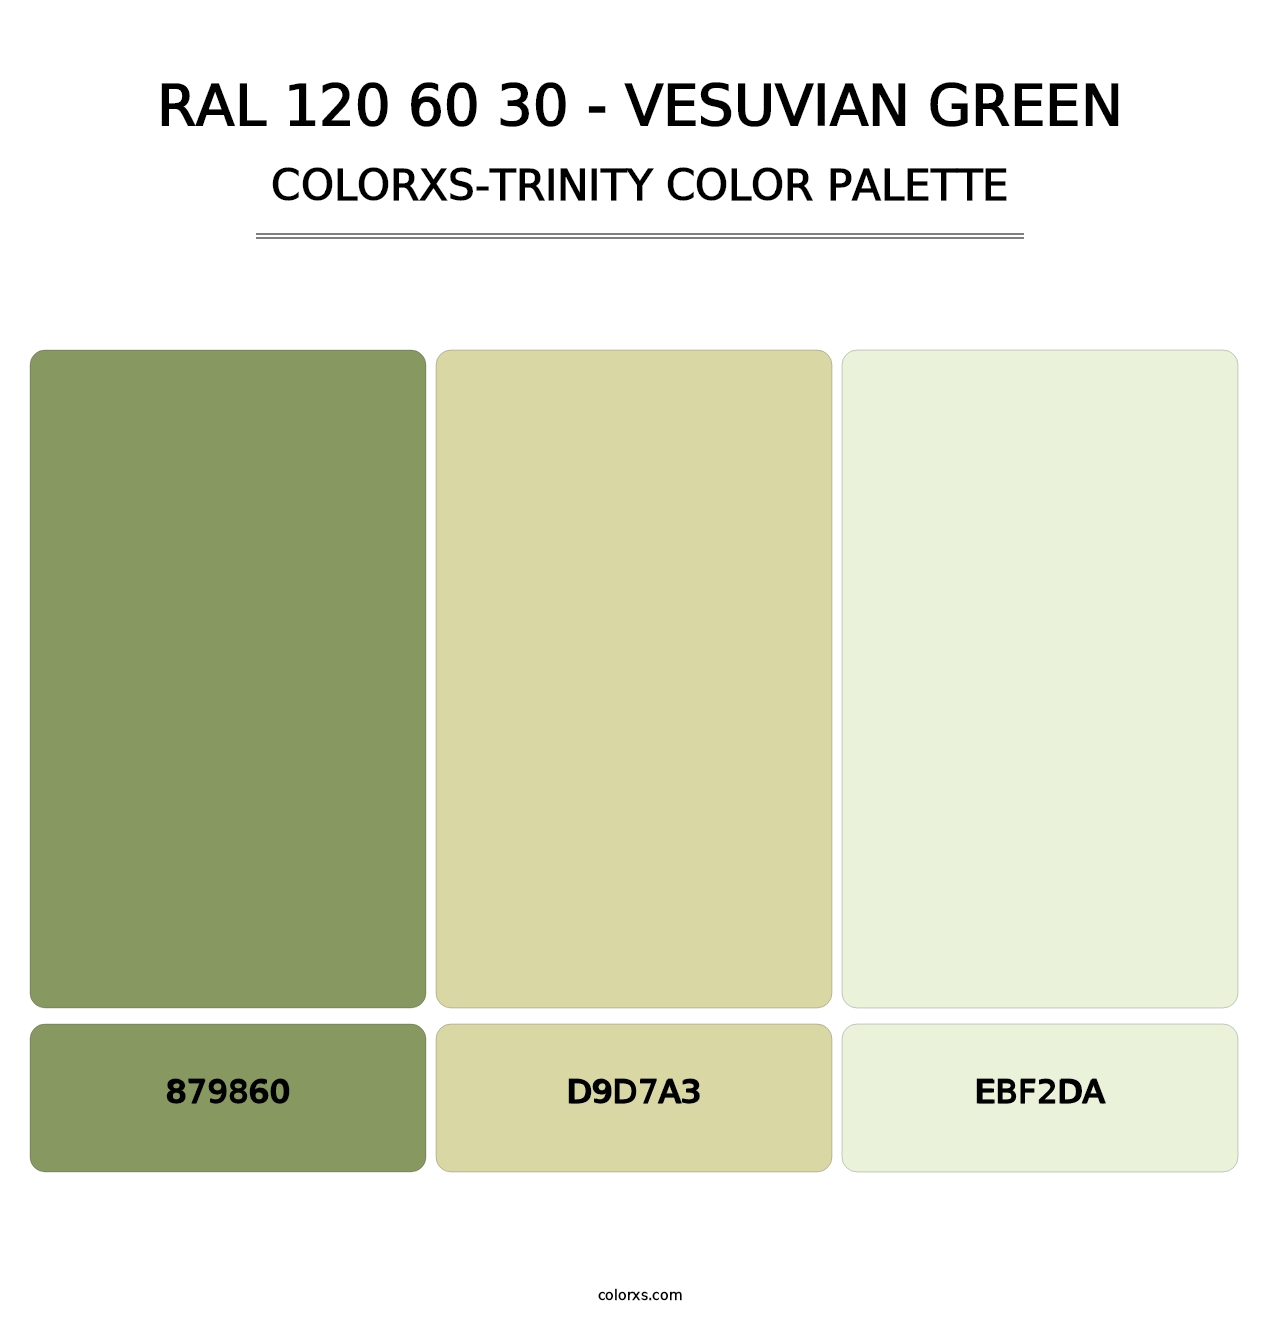 RAL 120 60 30 - Vesuvian Green - Colorxs Trinity Palette